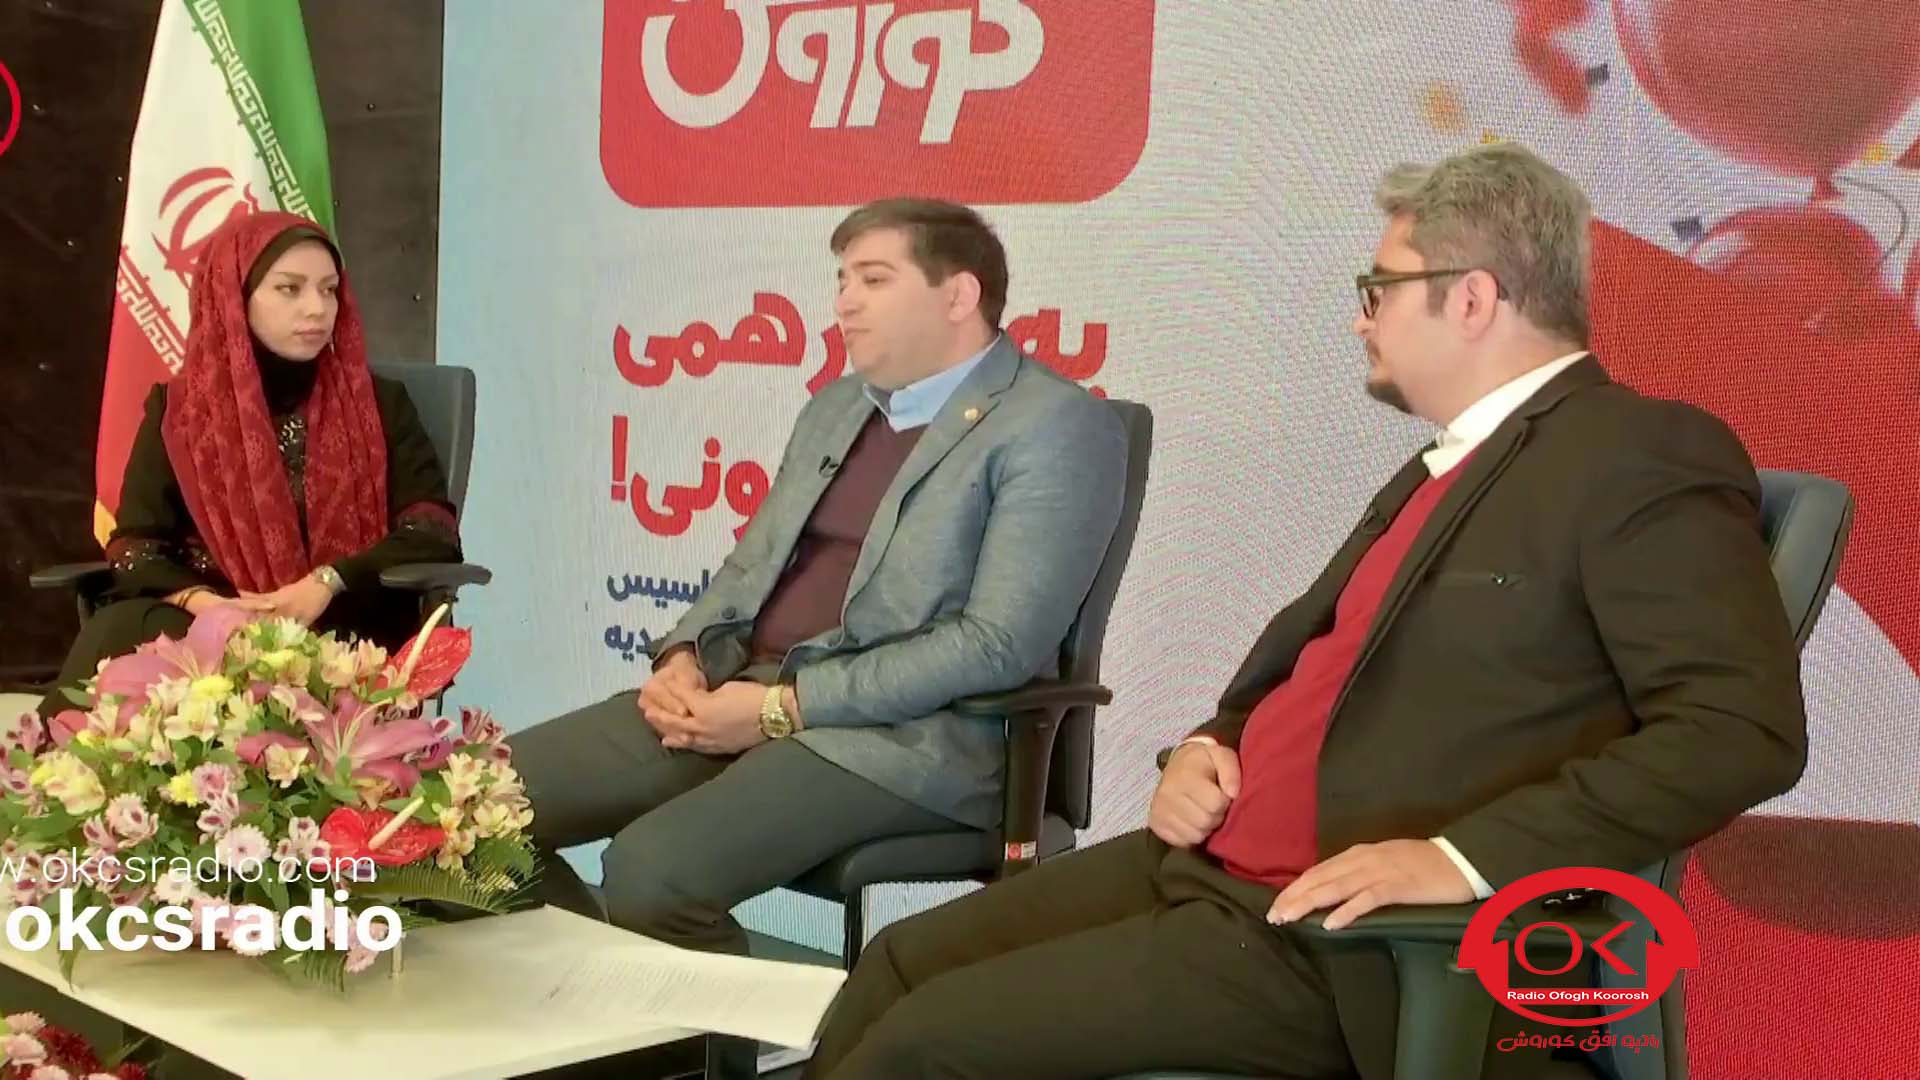  مصاحبه رادیو افق کوروش با دکتر فخریان با اجرای میلاد حسن زاده و نیلوفر نگهبانی 